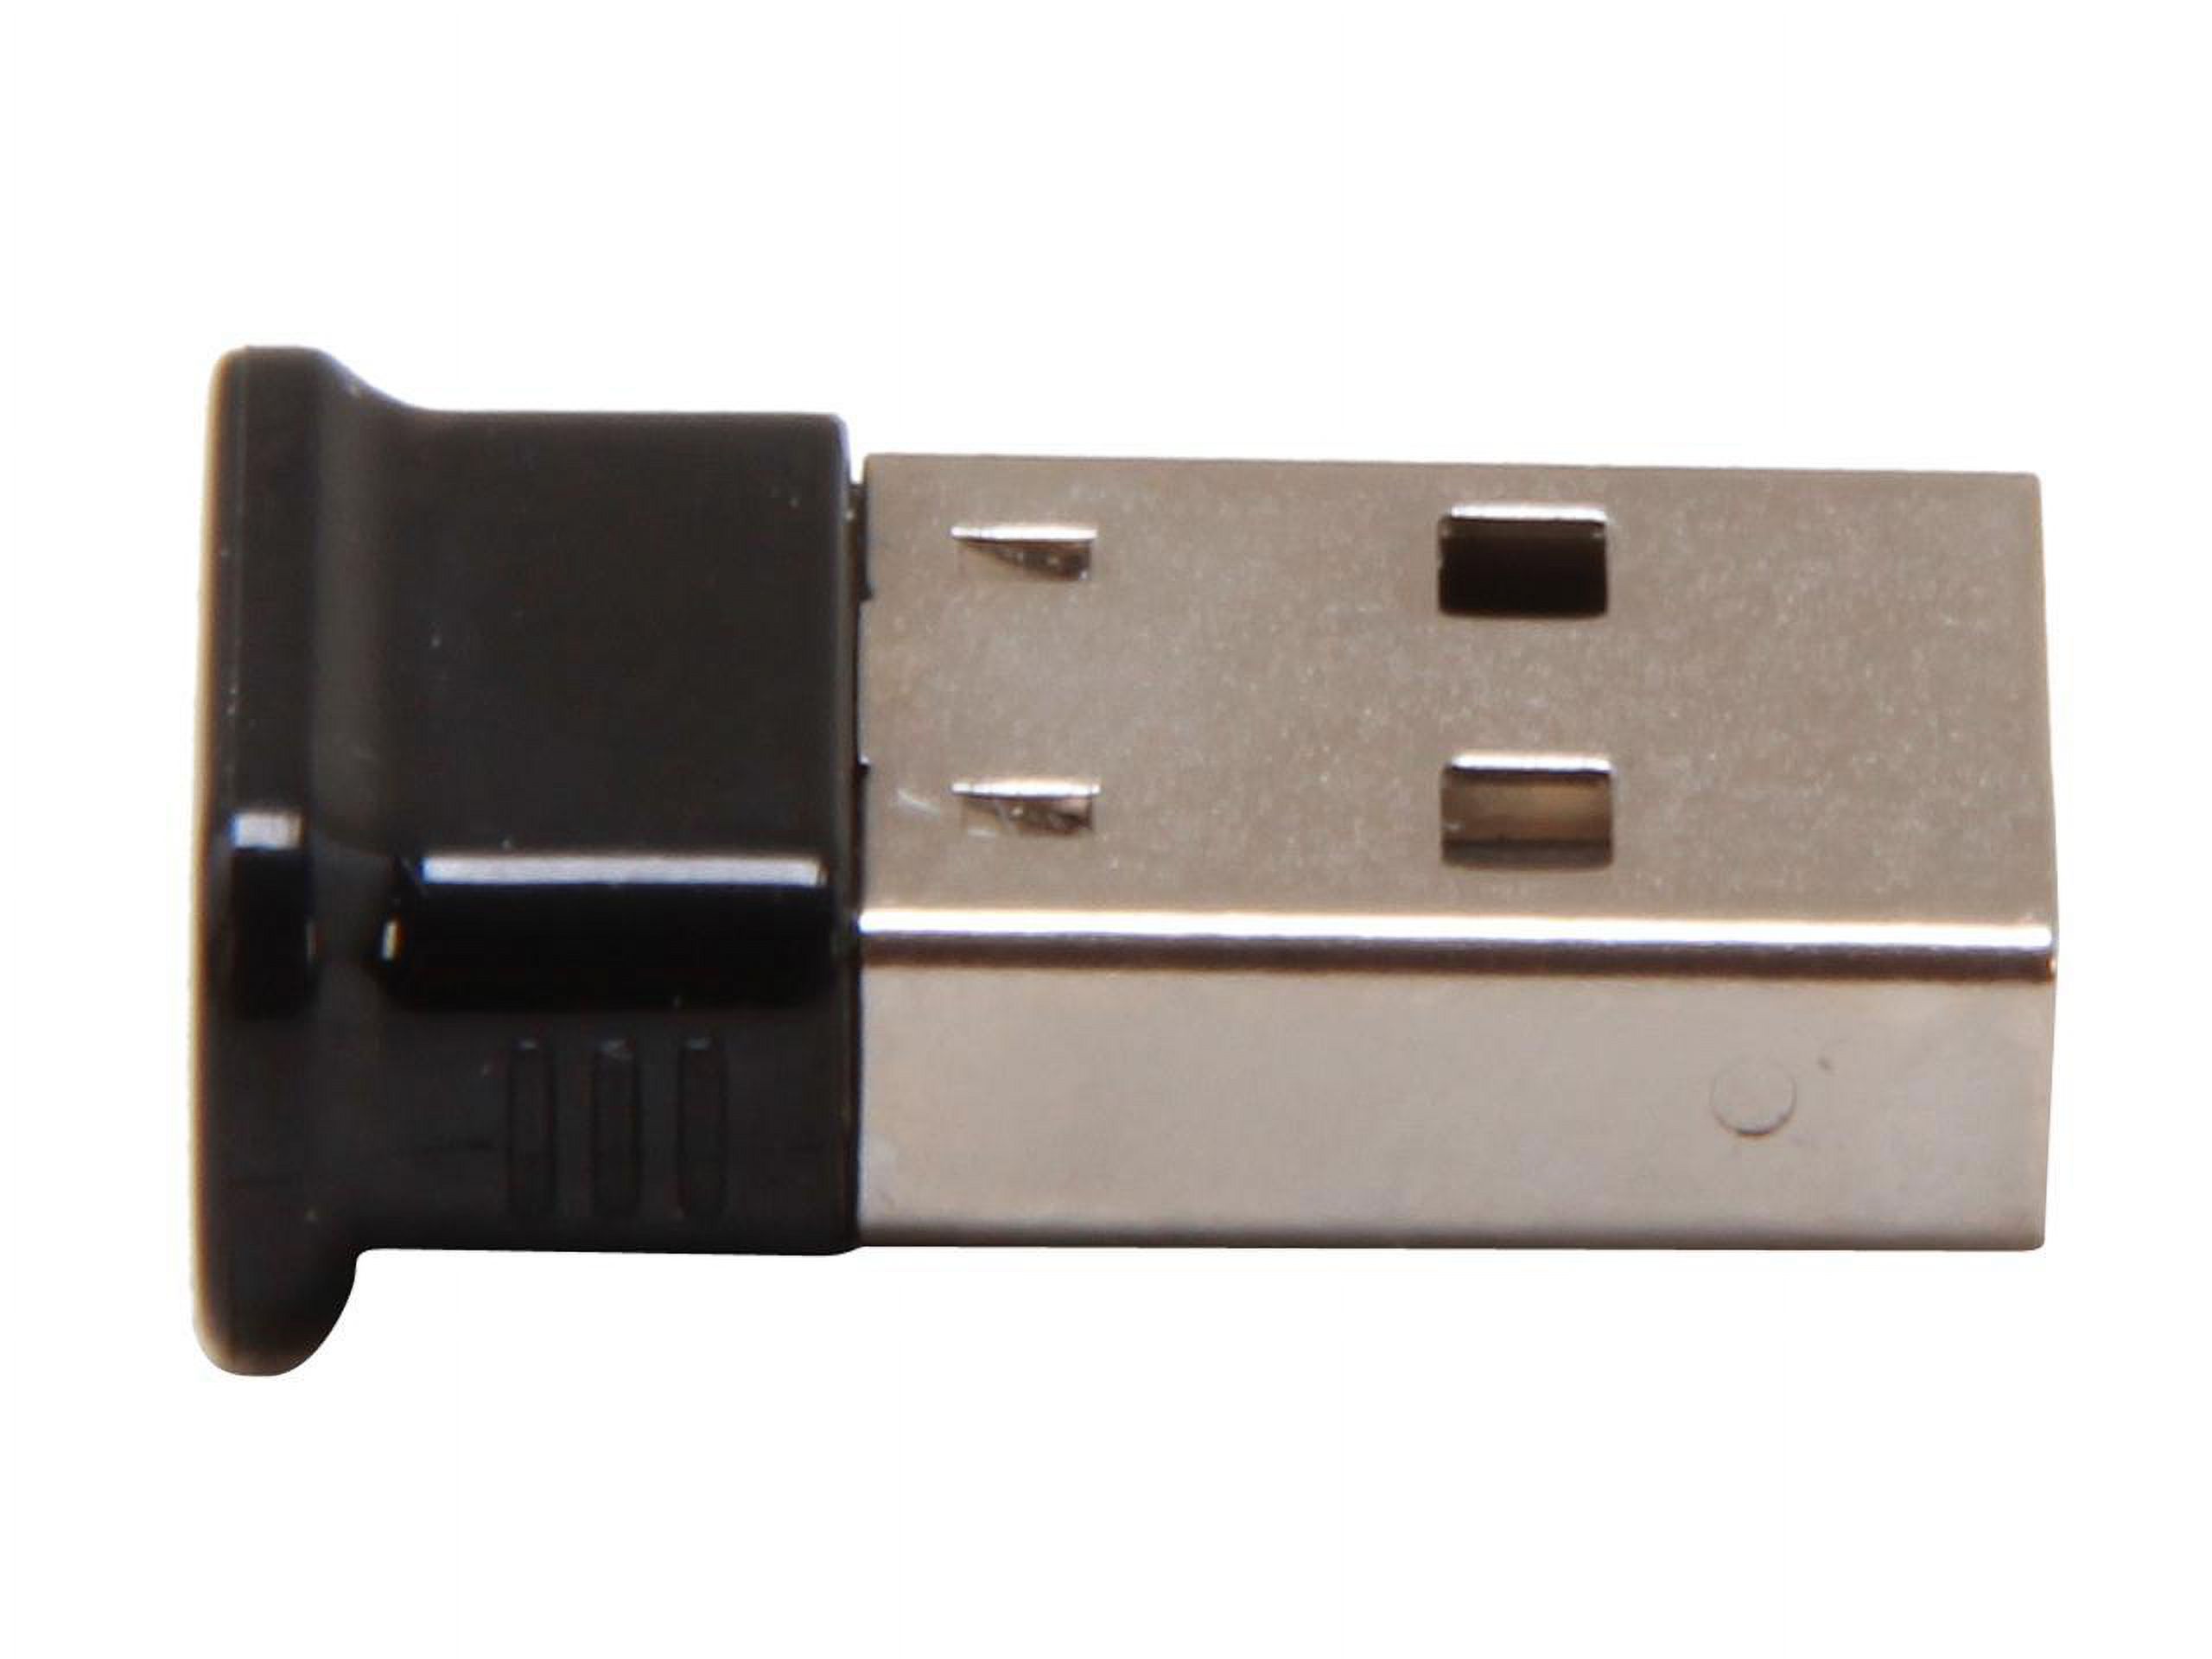 StarTech USBBT1EDR2 Mini USB Bluetooth 2.1 Adapter - Class 1 EDR Wireless Network Adapter - image 3 of 5